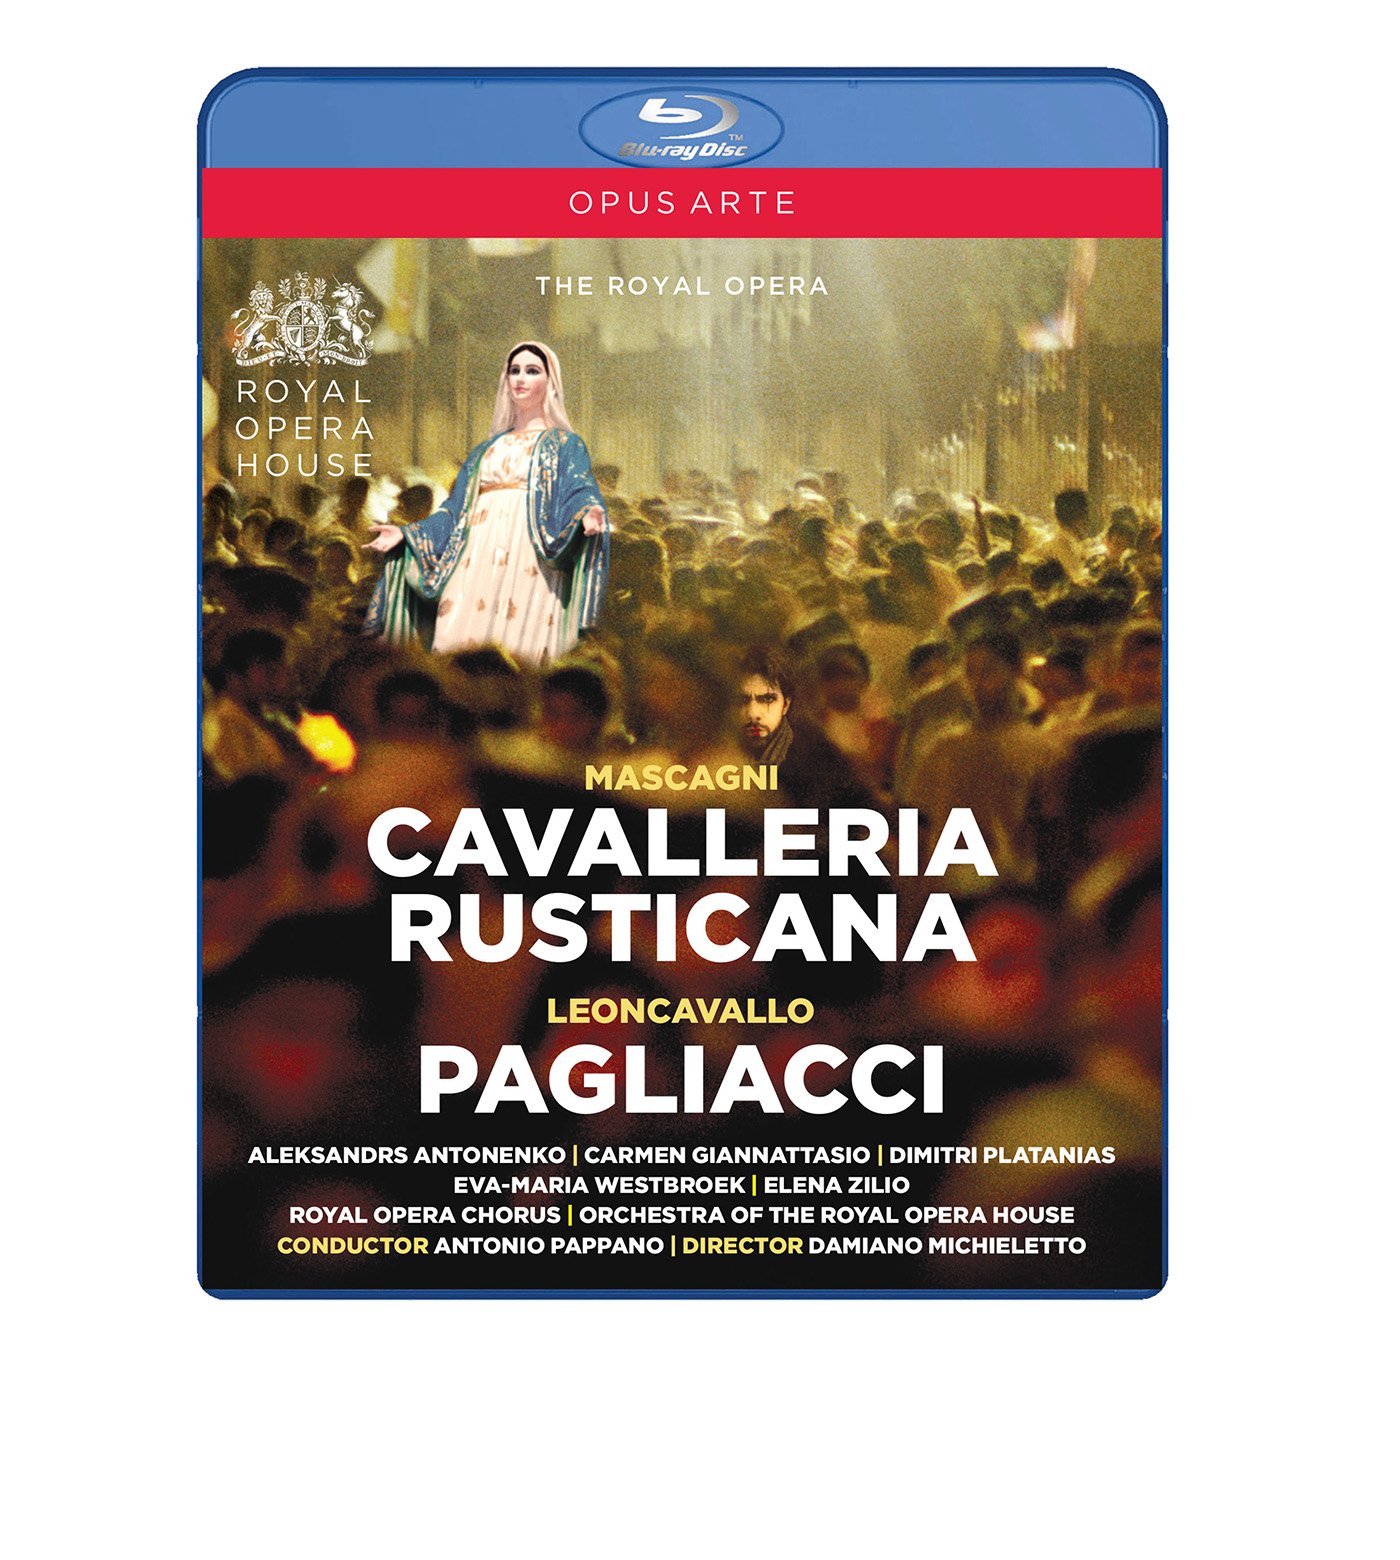 Music Blu-Ray Pietro Mascagni / Ruggero Leoncavallo - Cavalleria Rusticana / Pagliacci NUOVO SIGILLATO, EDIZIONE DEL 11/10/2016 SUBITO DISPONIBILE